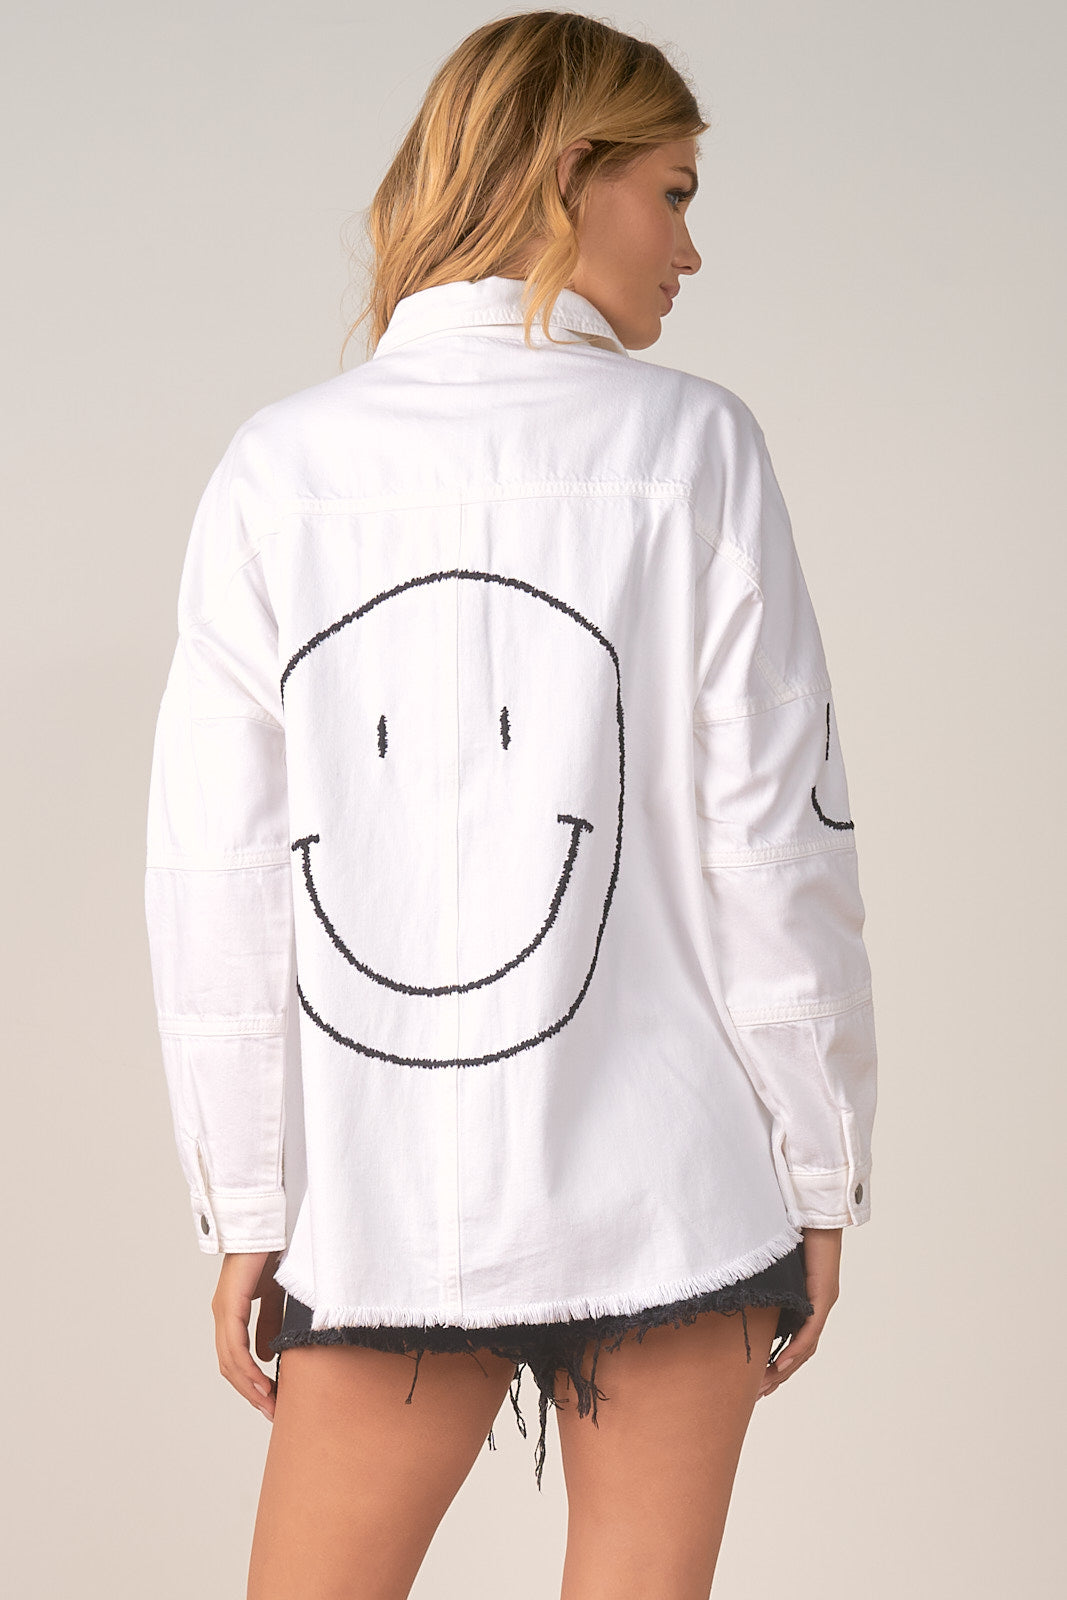 Elan Smiley Jacket